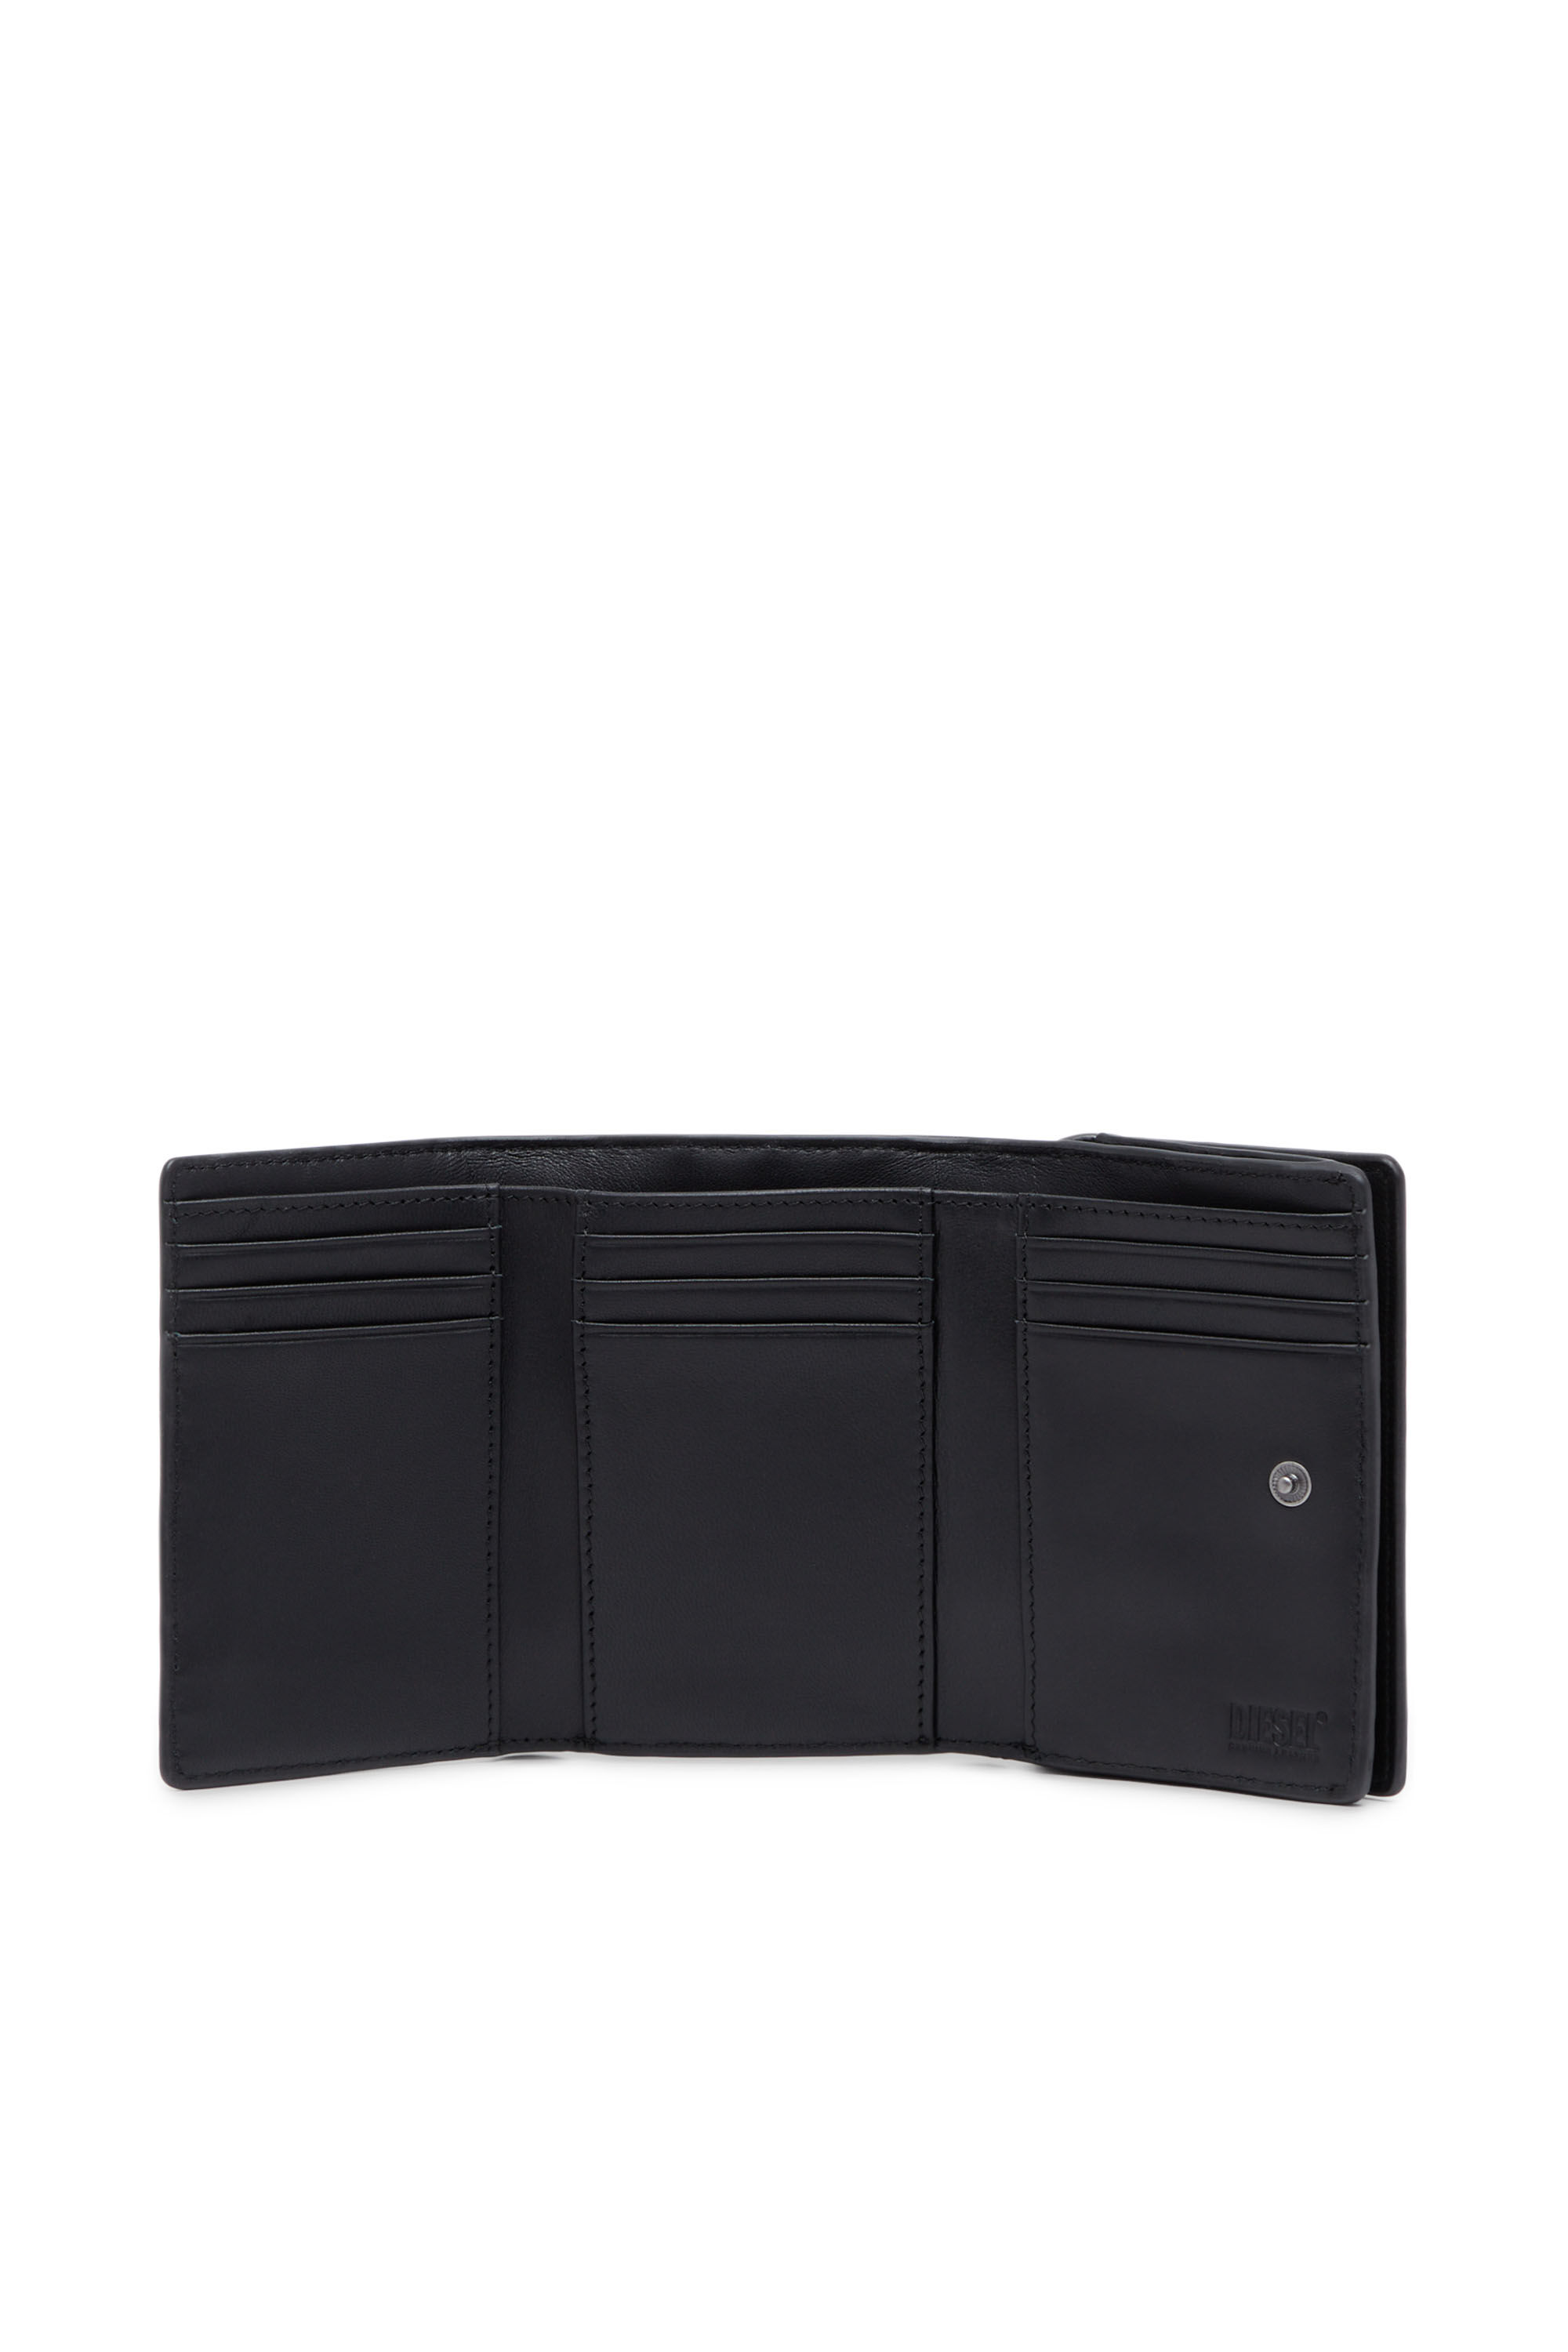 Men's Tri-fold wallet in croc-effect leather | Diesel